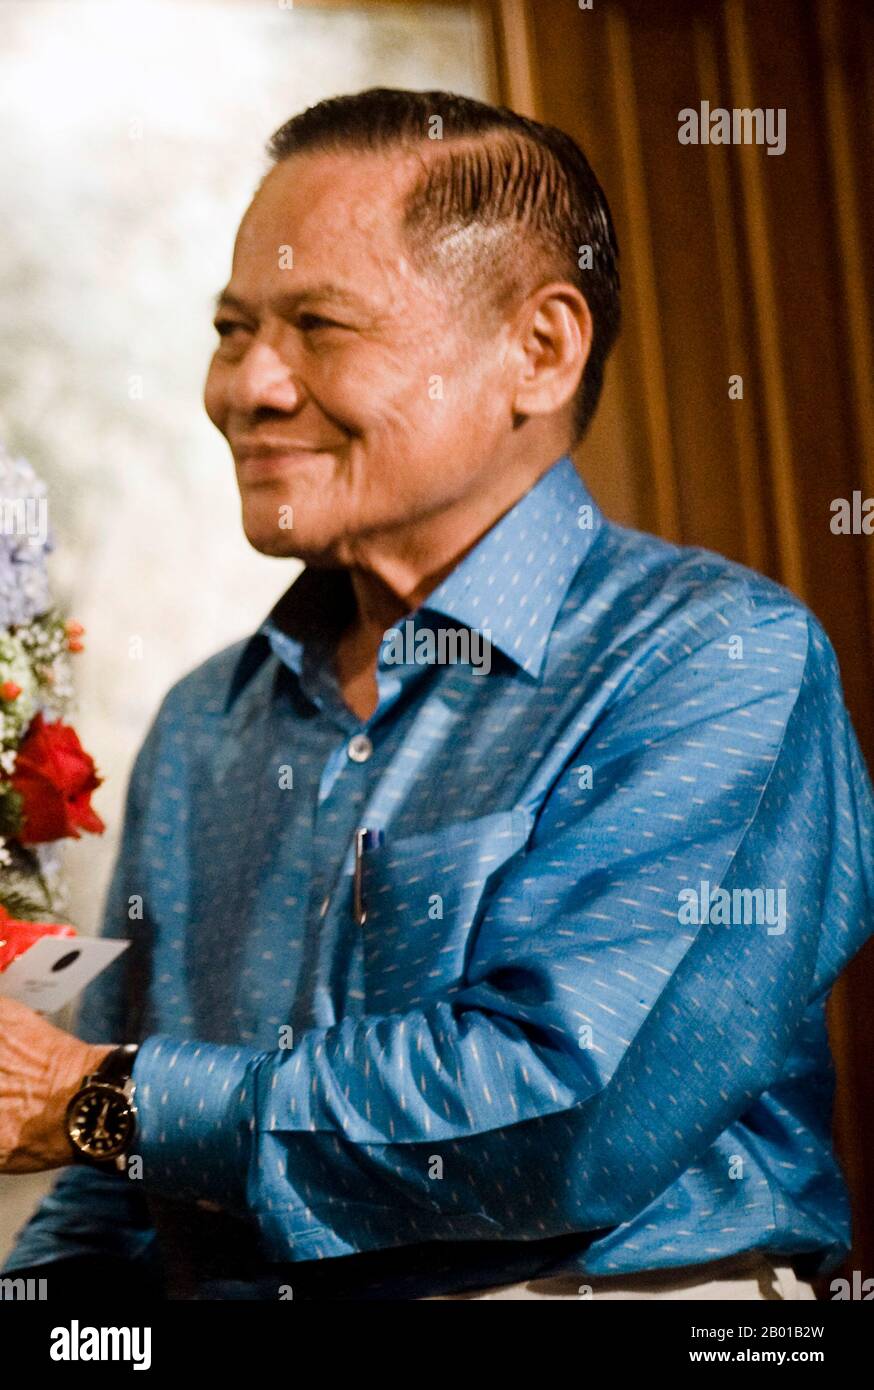 Thailandia: Banharn Silpa-arca (19 agosto 1932 - 23 aprile 2016), primo Ministro della Thailandia (r. 1995-1996). Foto di Peerapat Wimonrangcarat/Govt. Di Thailandia, 2009. Banharn Silpa-arca è stato il primo Ministro della Thailandia del 21st, dal 13 luglio 1995 al 24 novembre 1996. Dal 1976 è stato un membro del Parlamento sino-tailandese veterano in qualità di rappresentante eletto della provincia di Suphanburi. Aveva fatto la sua fortuna in costruzione prima di entrare in politica, e ha tenuto diversi posti di gabinetto in diversi governi. Durante il suo mandato, fu coinvolto in vari scandali di corruzione, che lo provocarono a dimettersi. Foto Stock